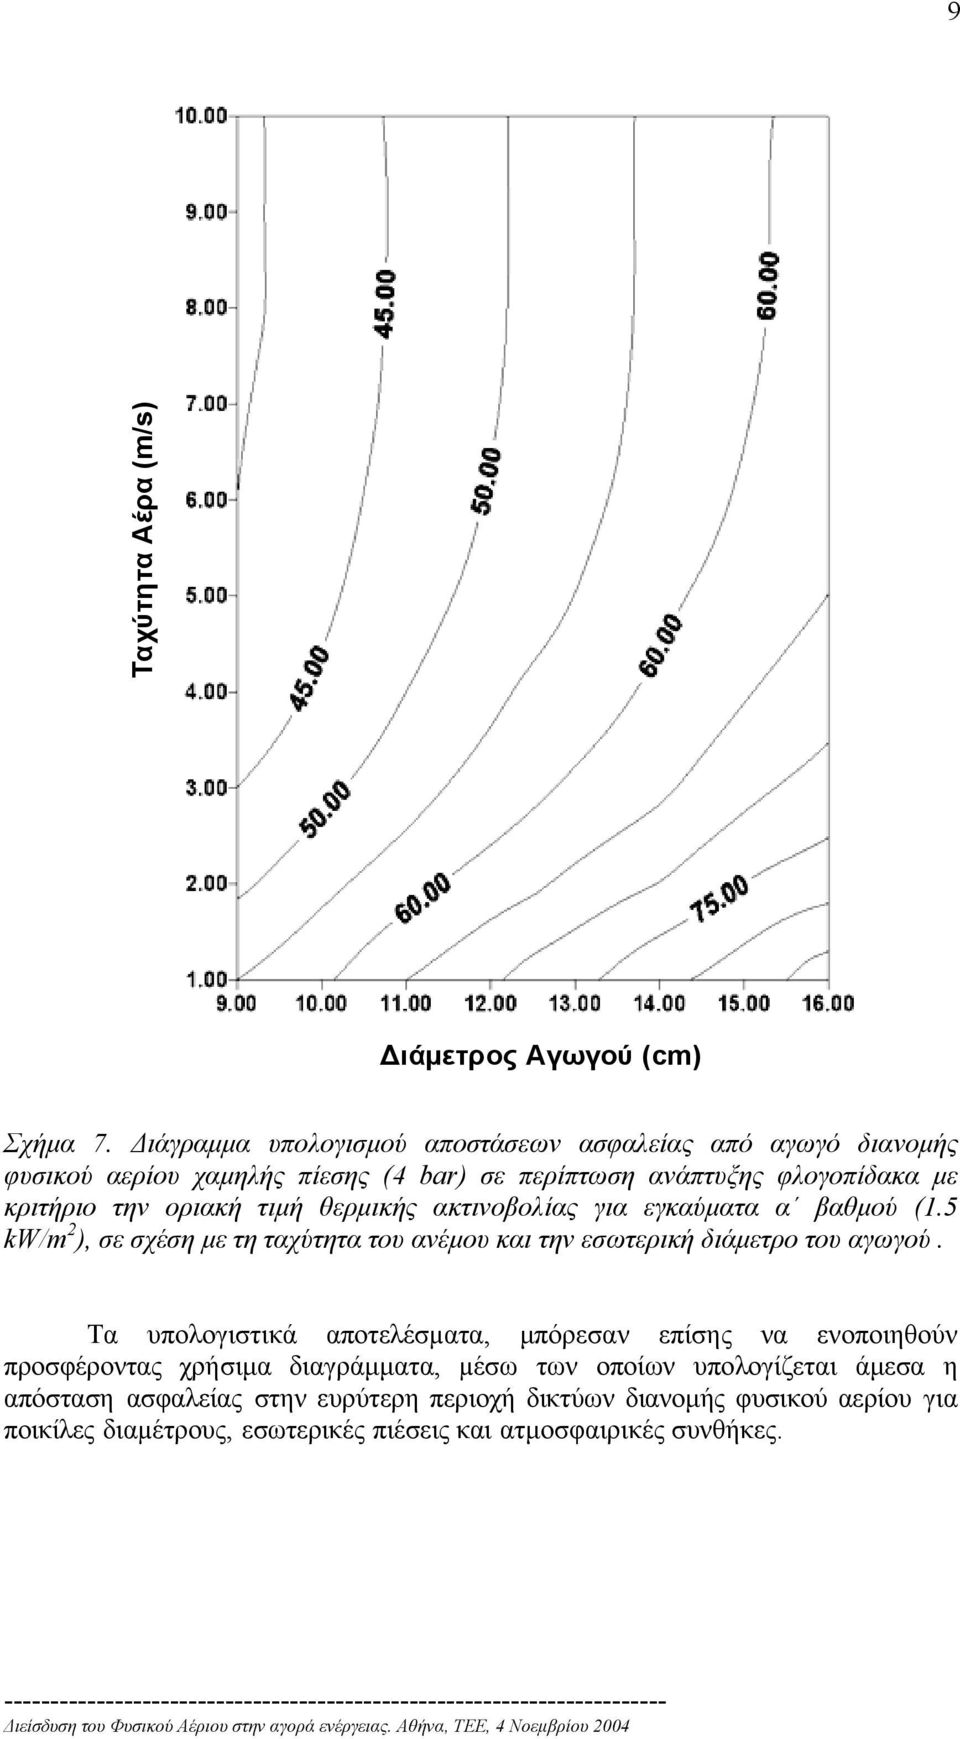 οριακή τιµή θερµικής ακτινοβολίας για εγκαύµατα α βαθµού (1.5 kw/m 2 ), σε σχέση µε τη ταχύτητα του ανέµου και την εσωτερική διάµετρο του αγωγού.